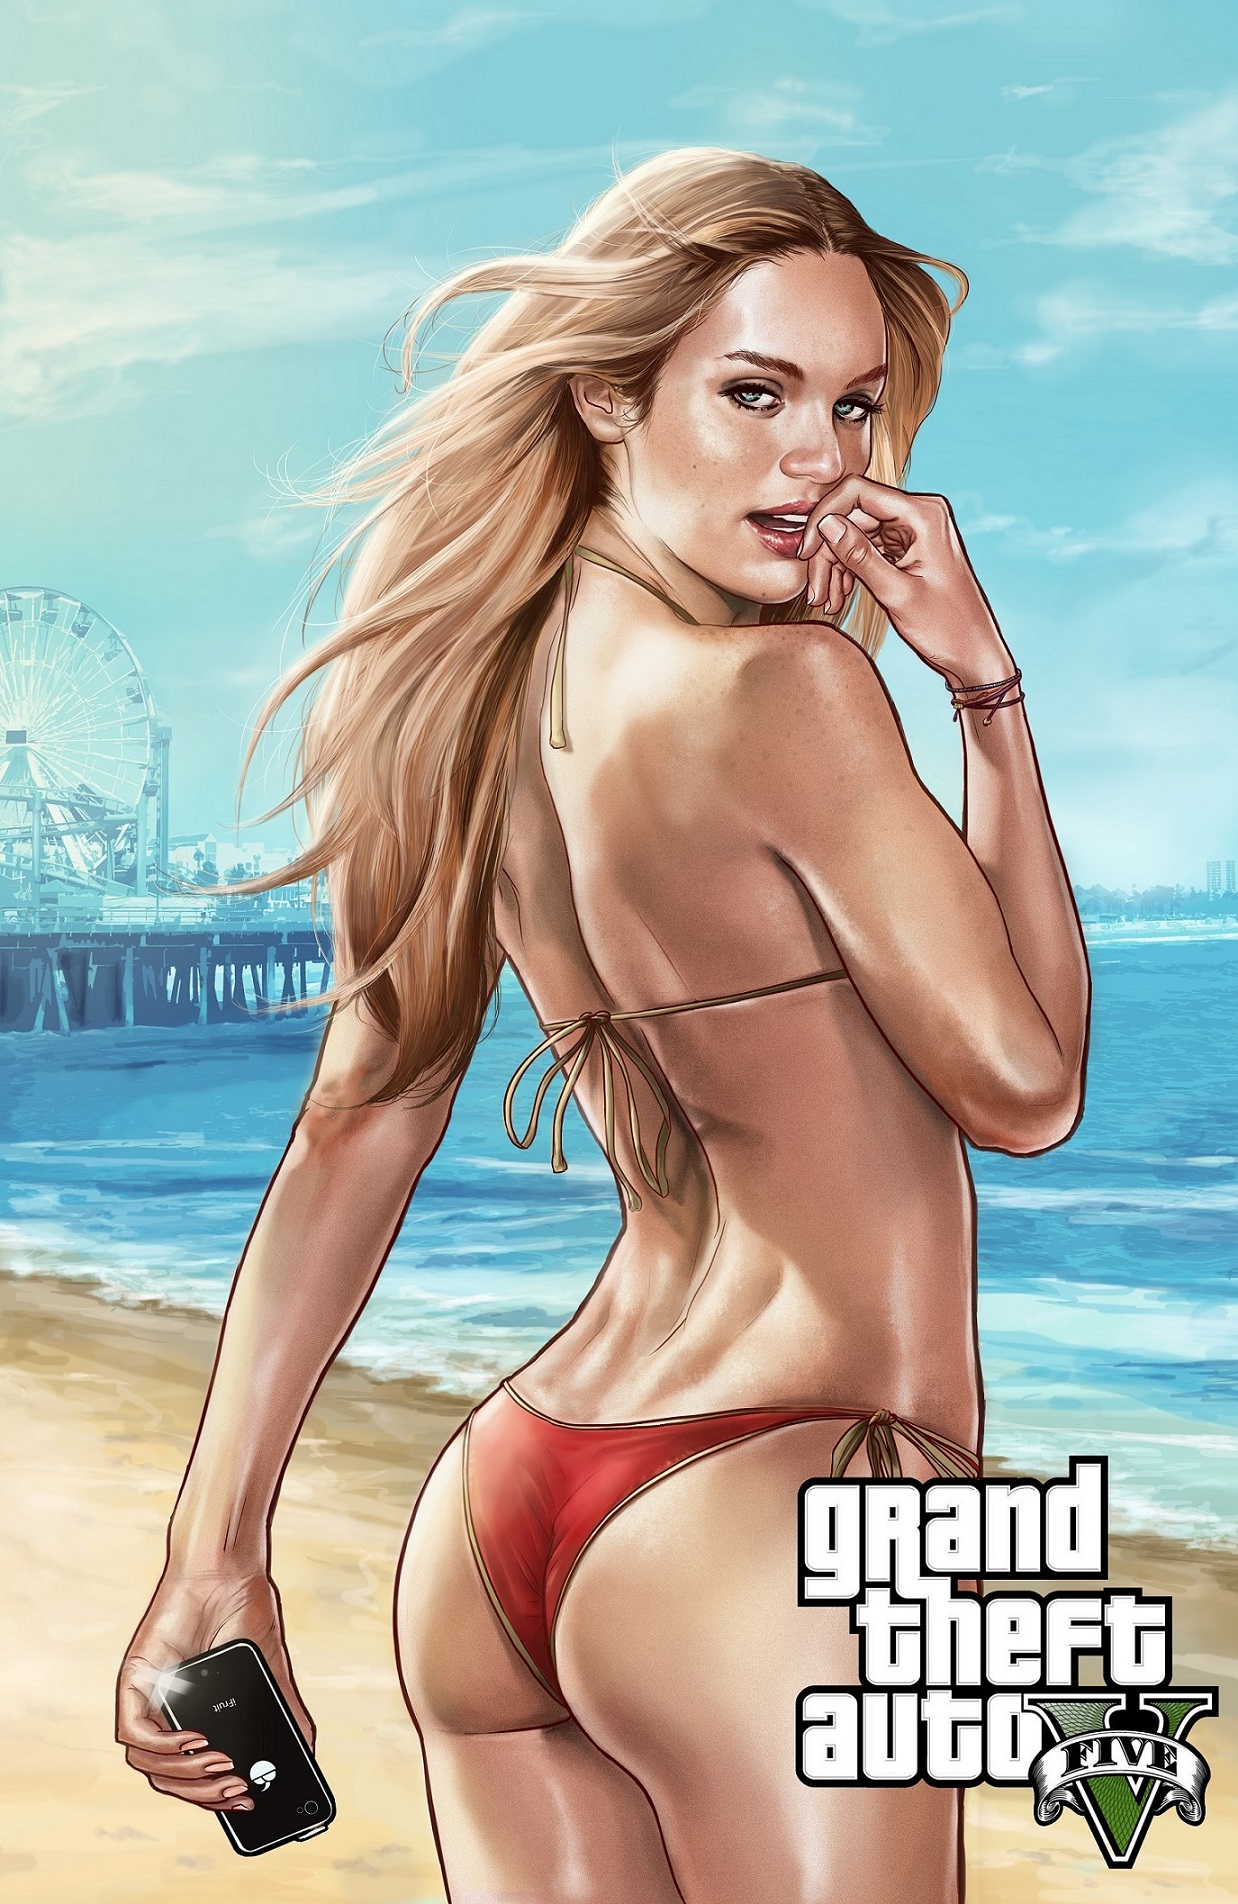 Название: Grand Theft Auto V Жанр: Экшены, Приключенческие игры Разработчик...